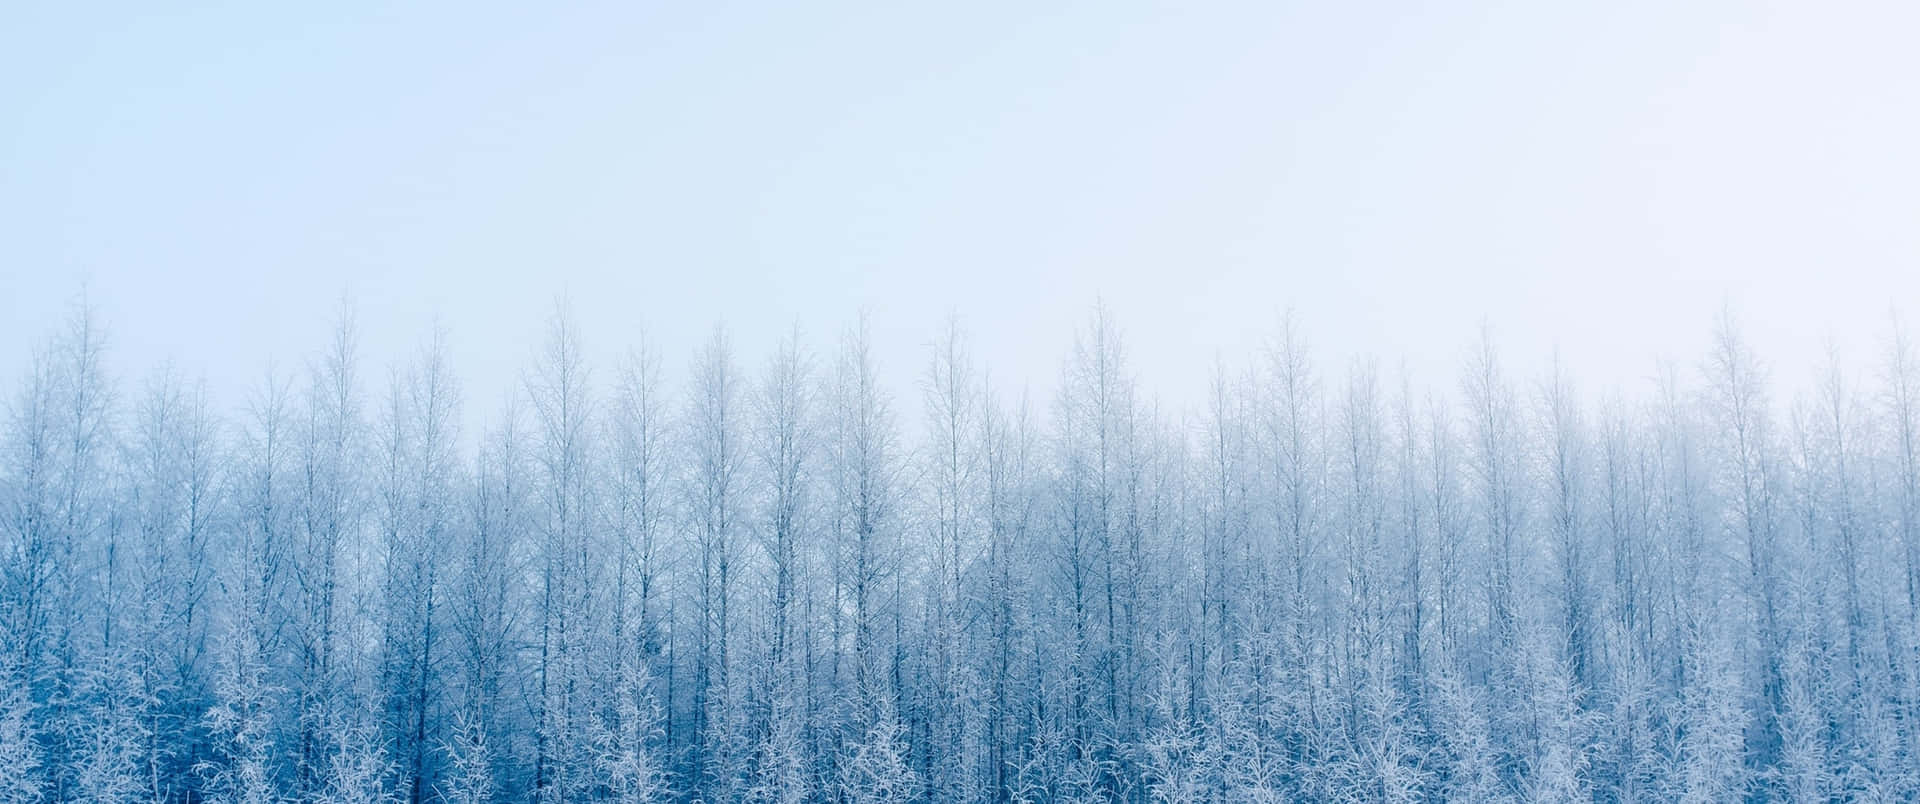 Snowy Scenery in Winter Wallpaper